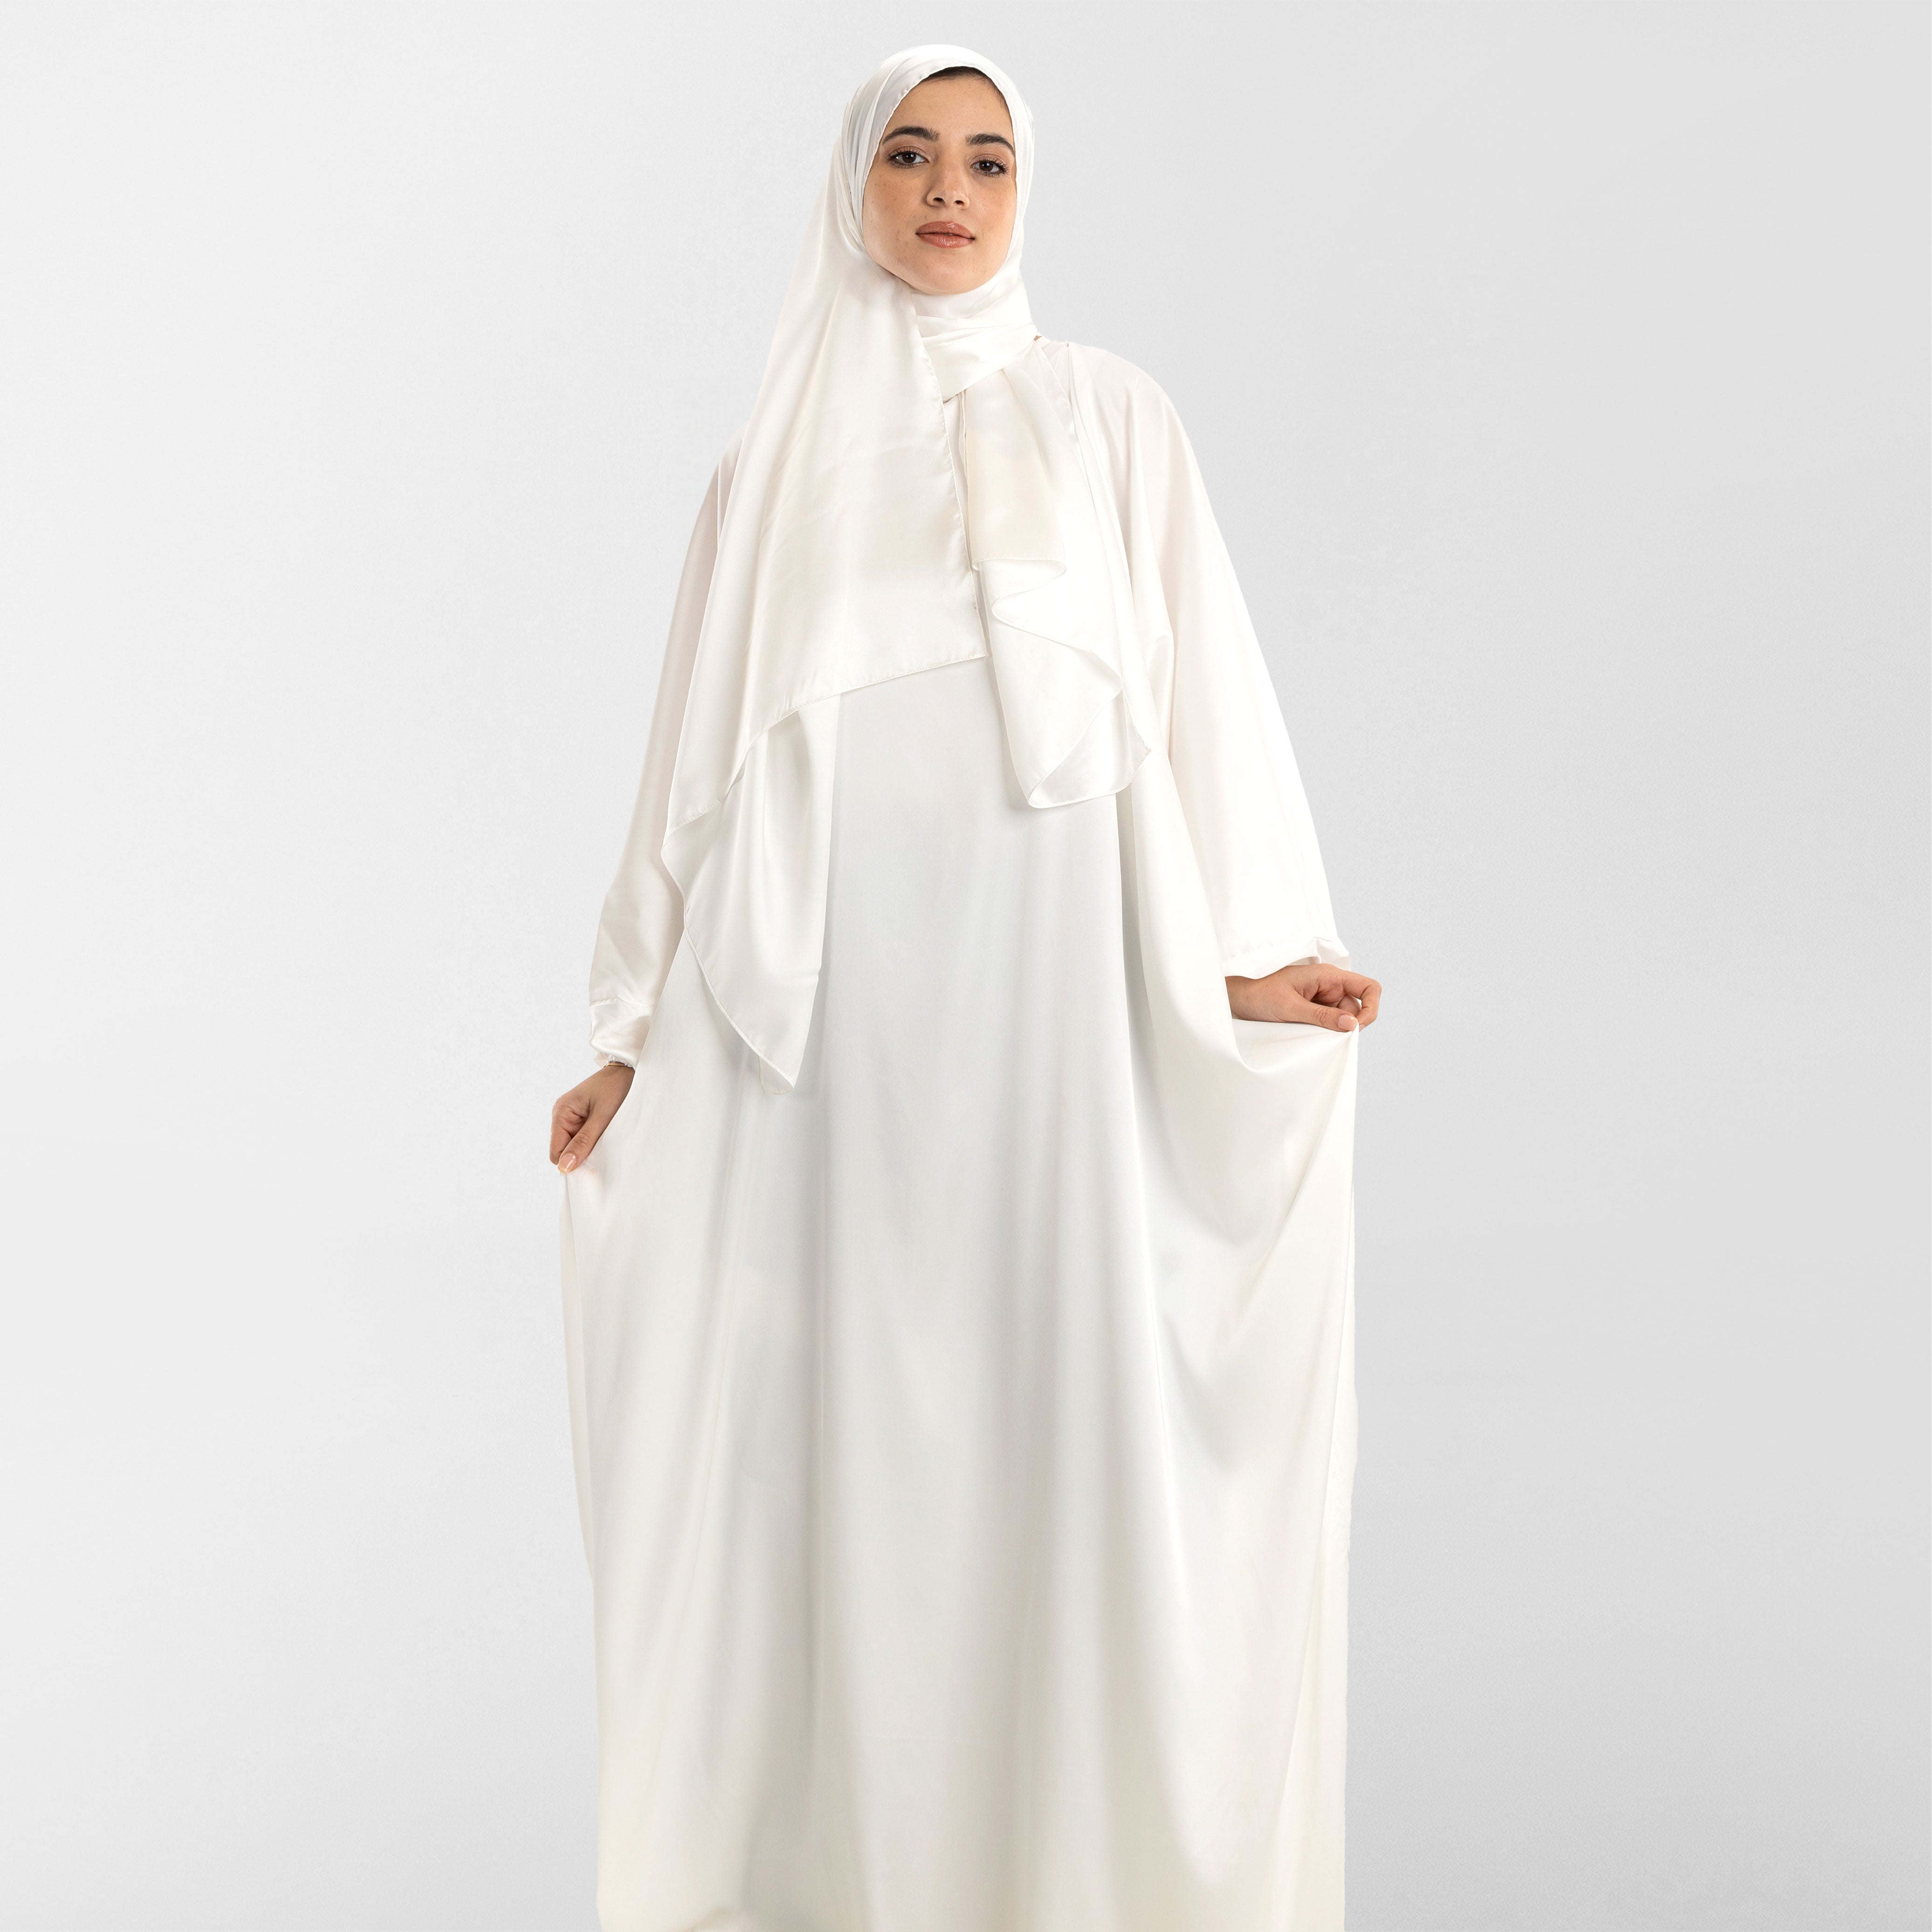 Prayer Wear - Isdal FULL WHITE